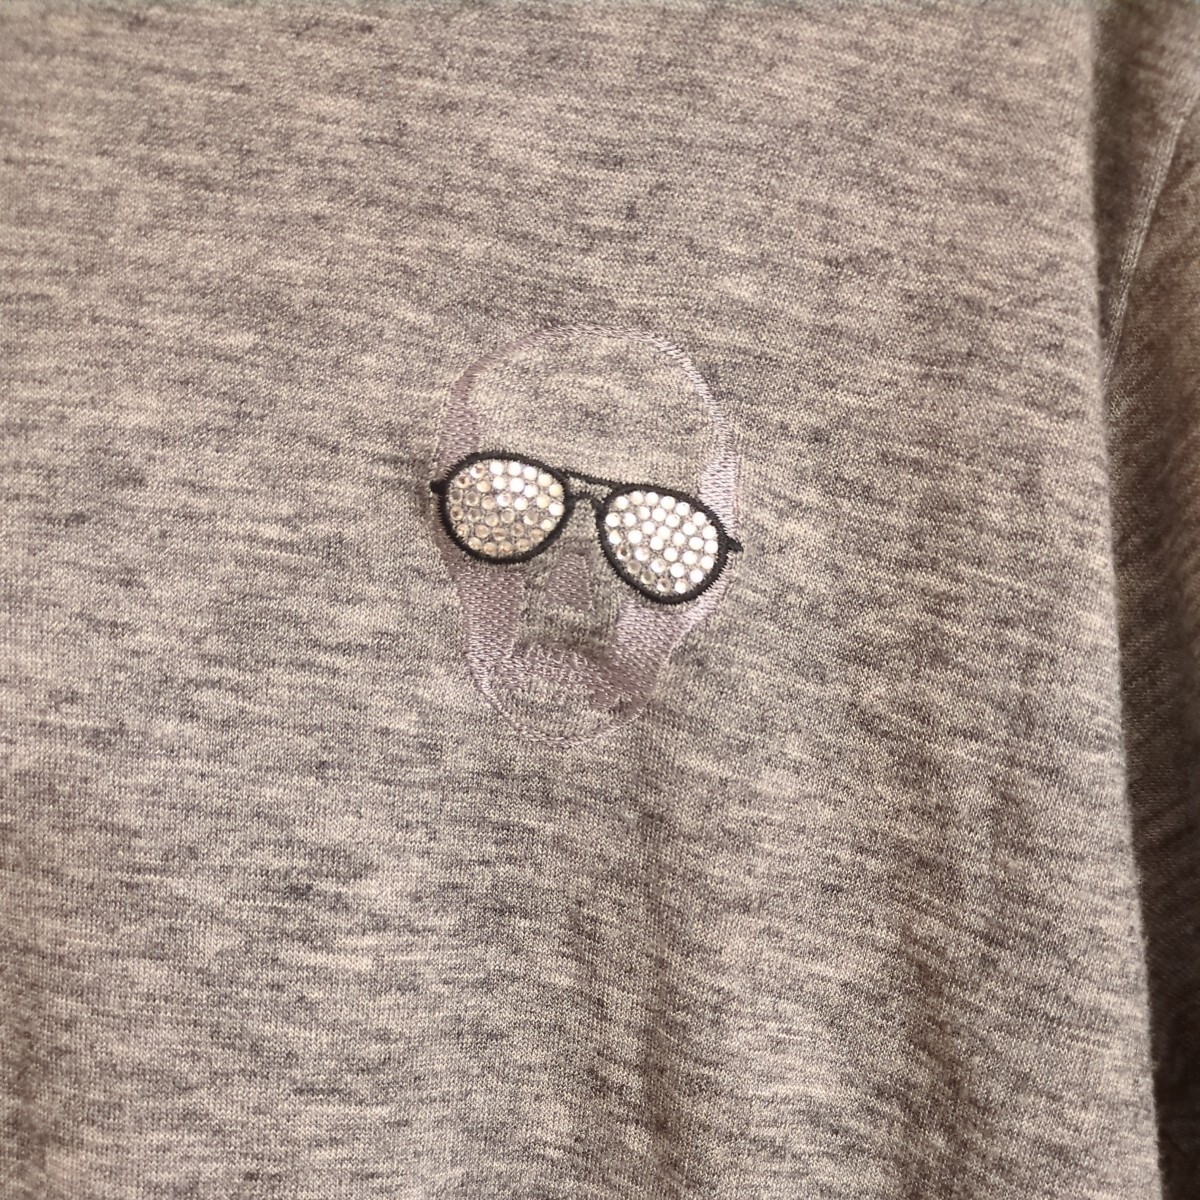 ルシアン ペラフィネ lucien pellat-finet Ｖネック グレー ニット セーター 半袖 メンズ 男性 ドクロ スカル 髑髏 灰色 Tシャツとしても_画像2